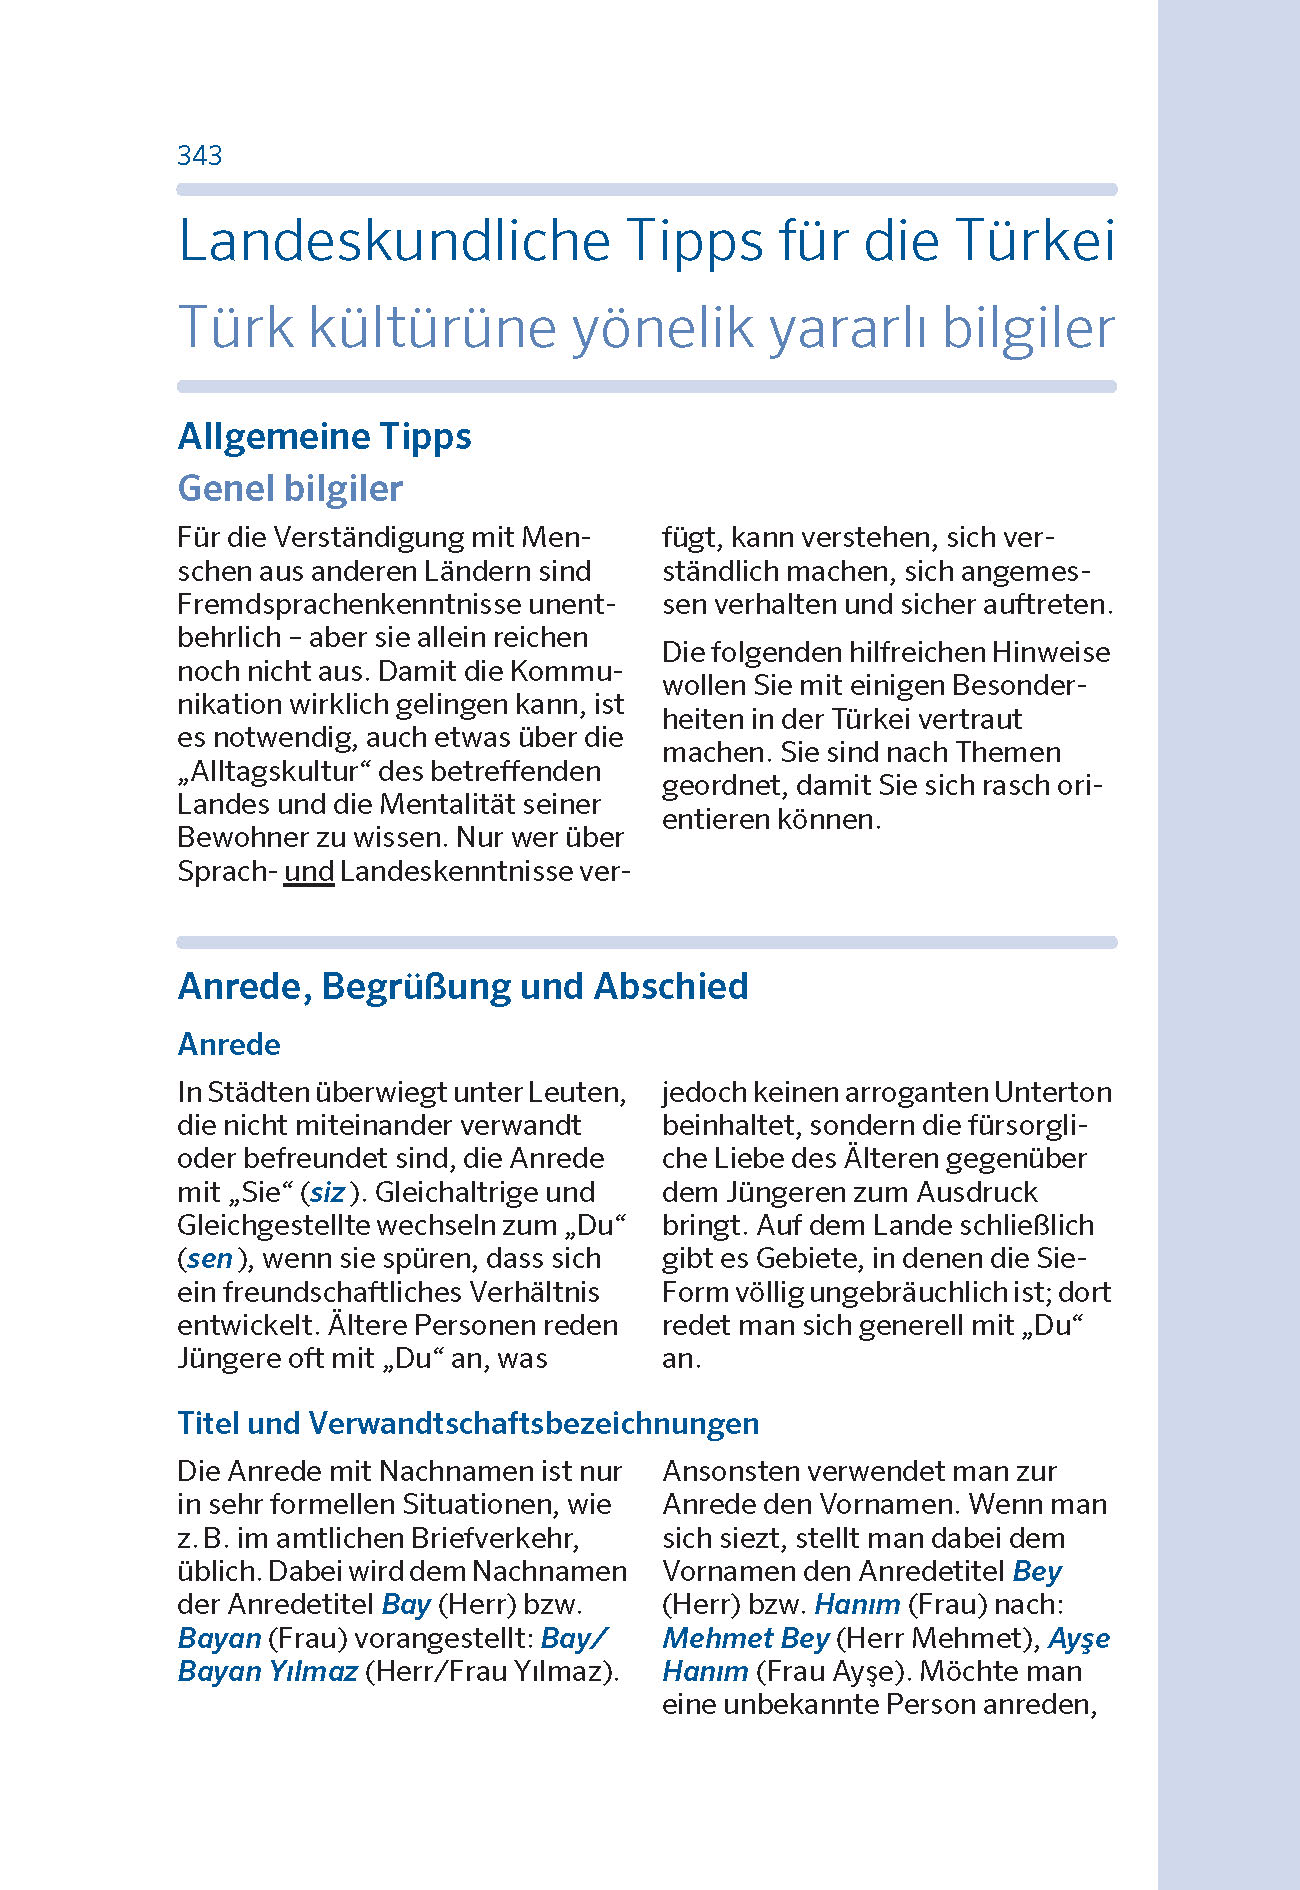 PONS Basiswörterbuch Türkisch